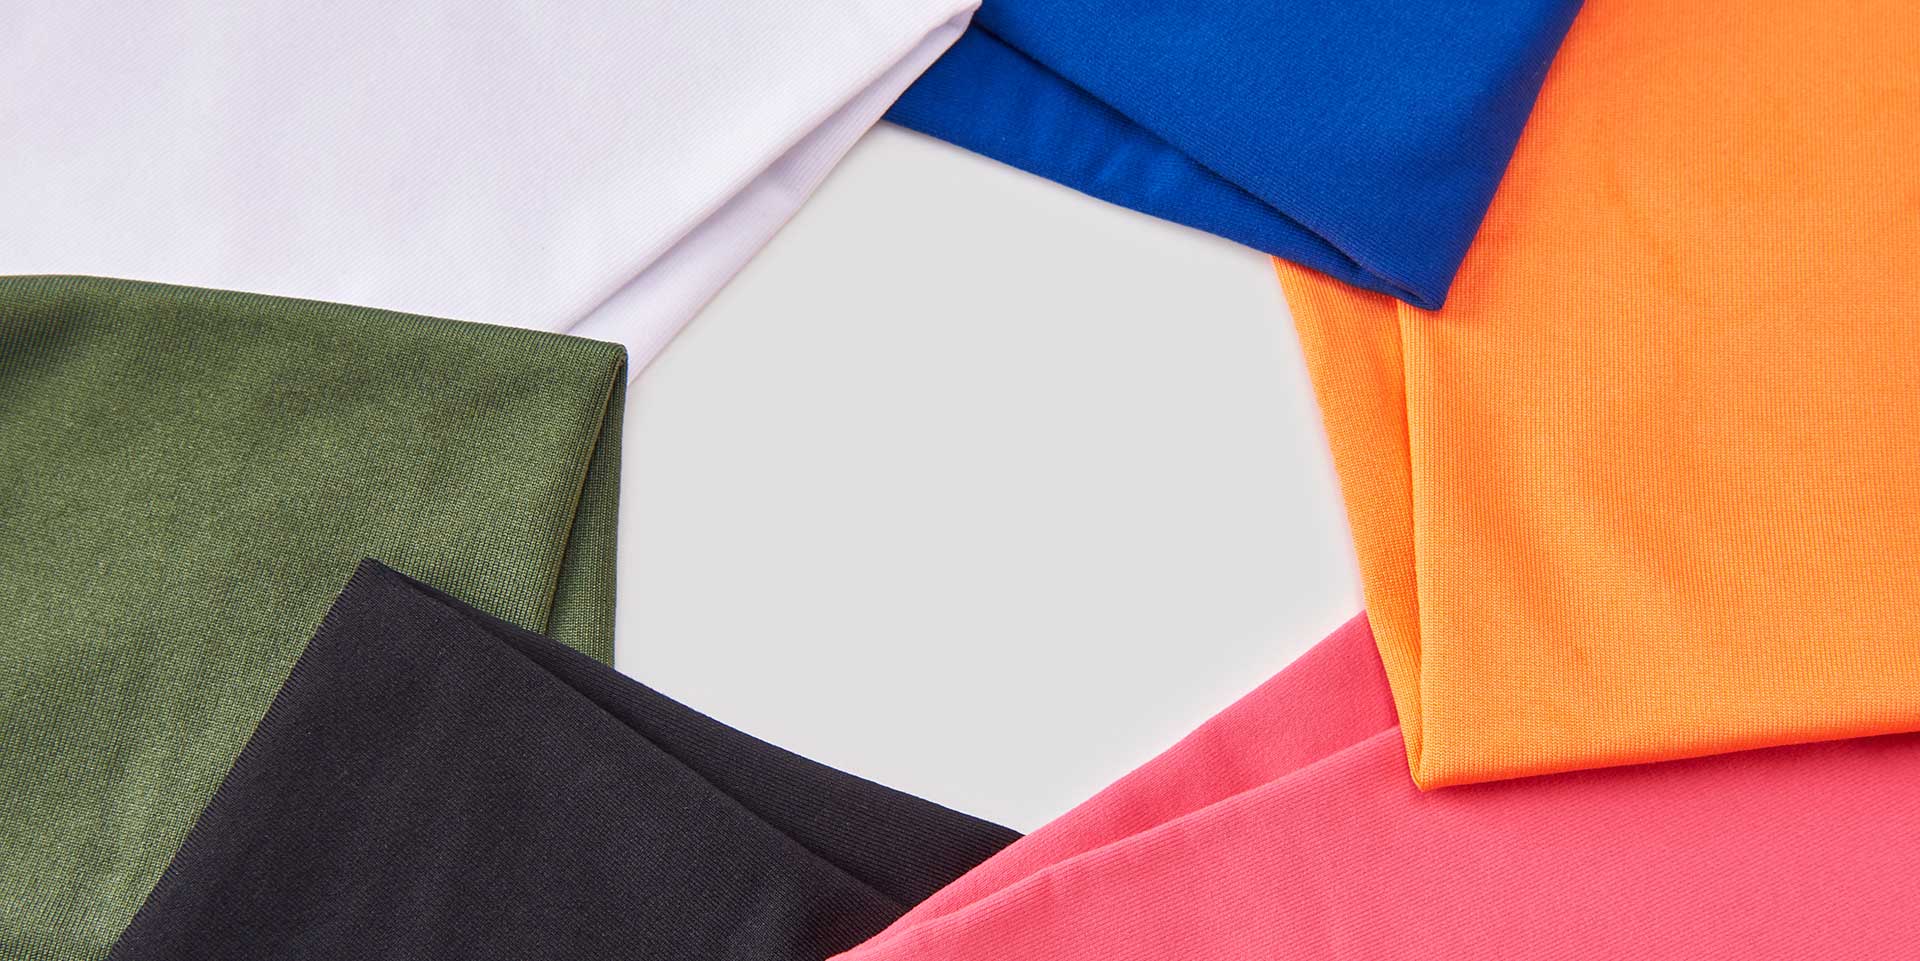 What Is Fleece-Lined? Why Is It Used in Sportswear?